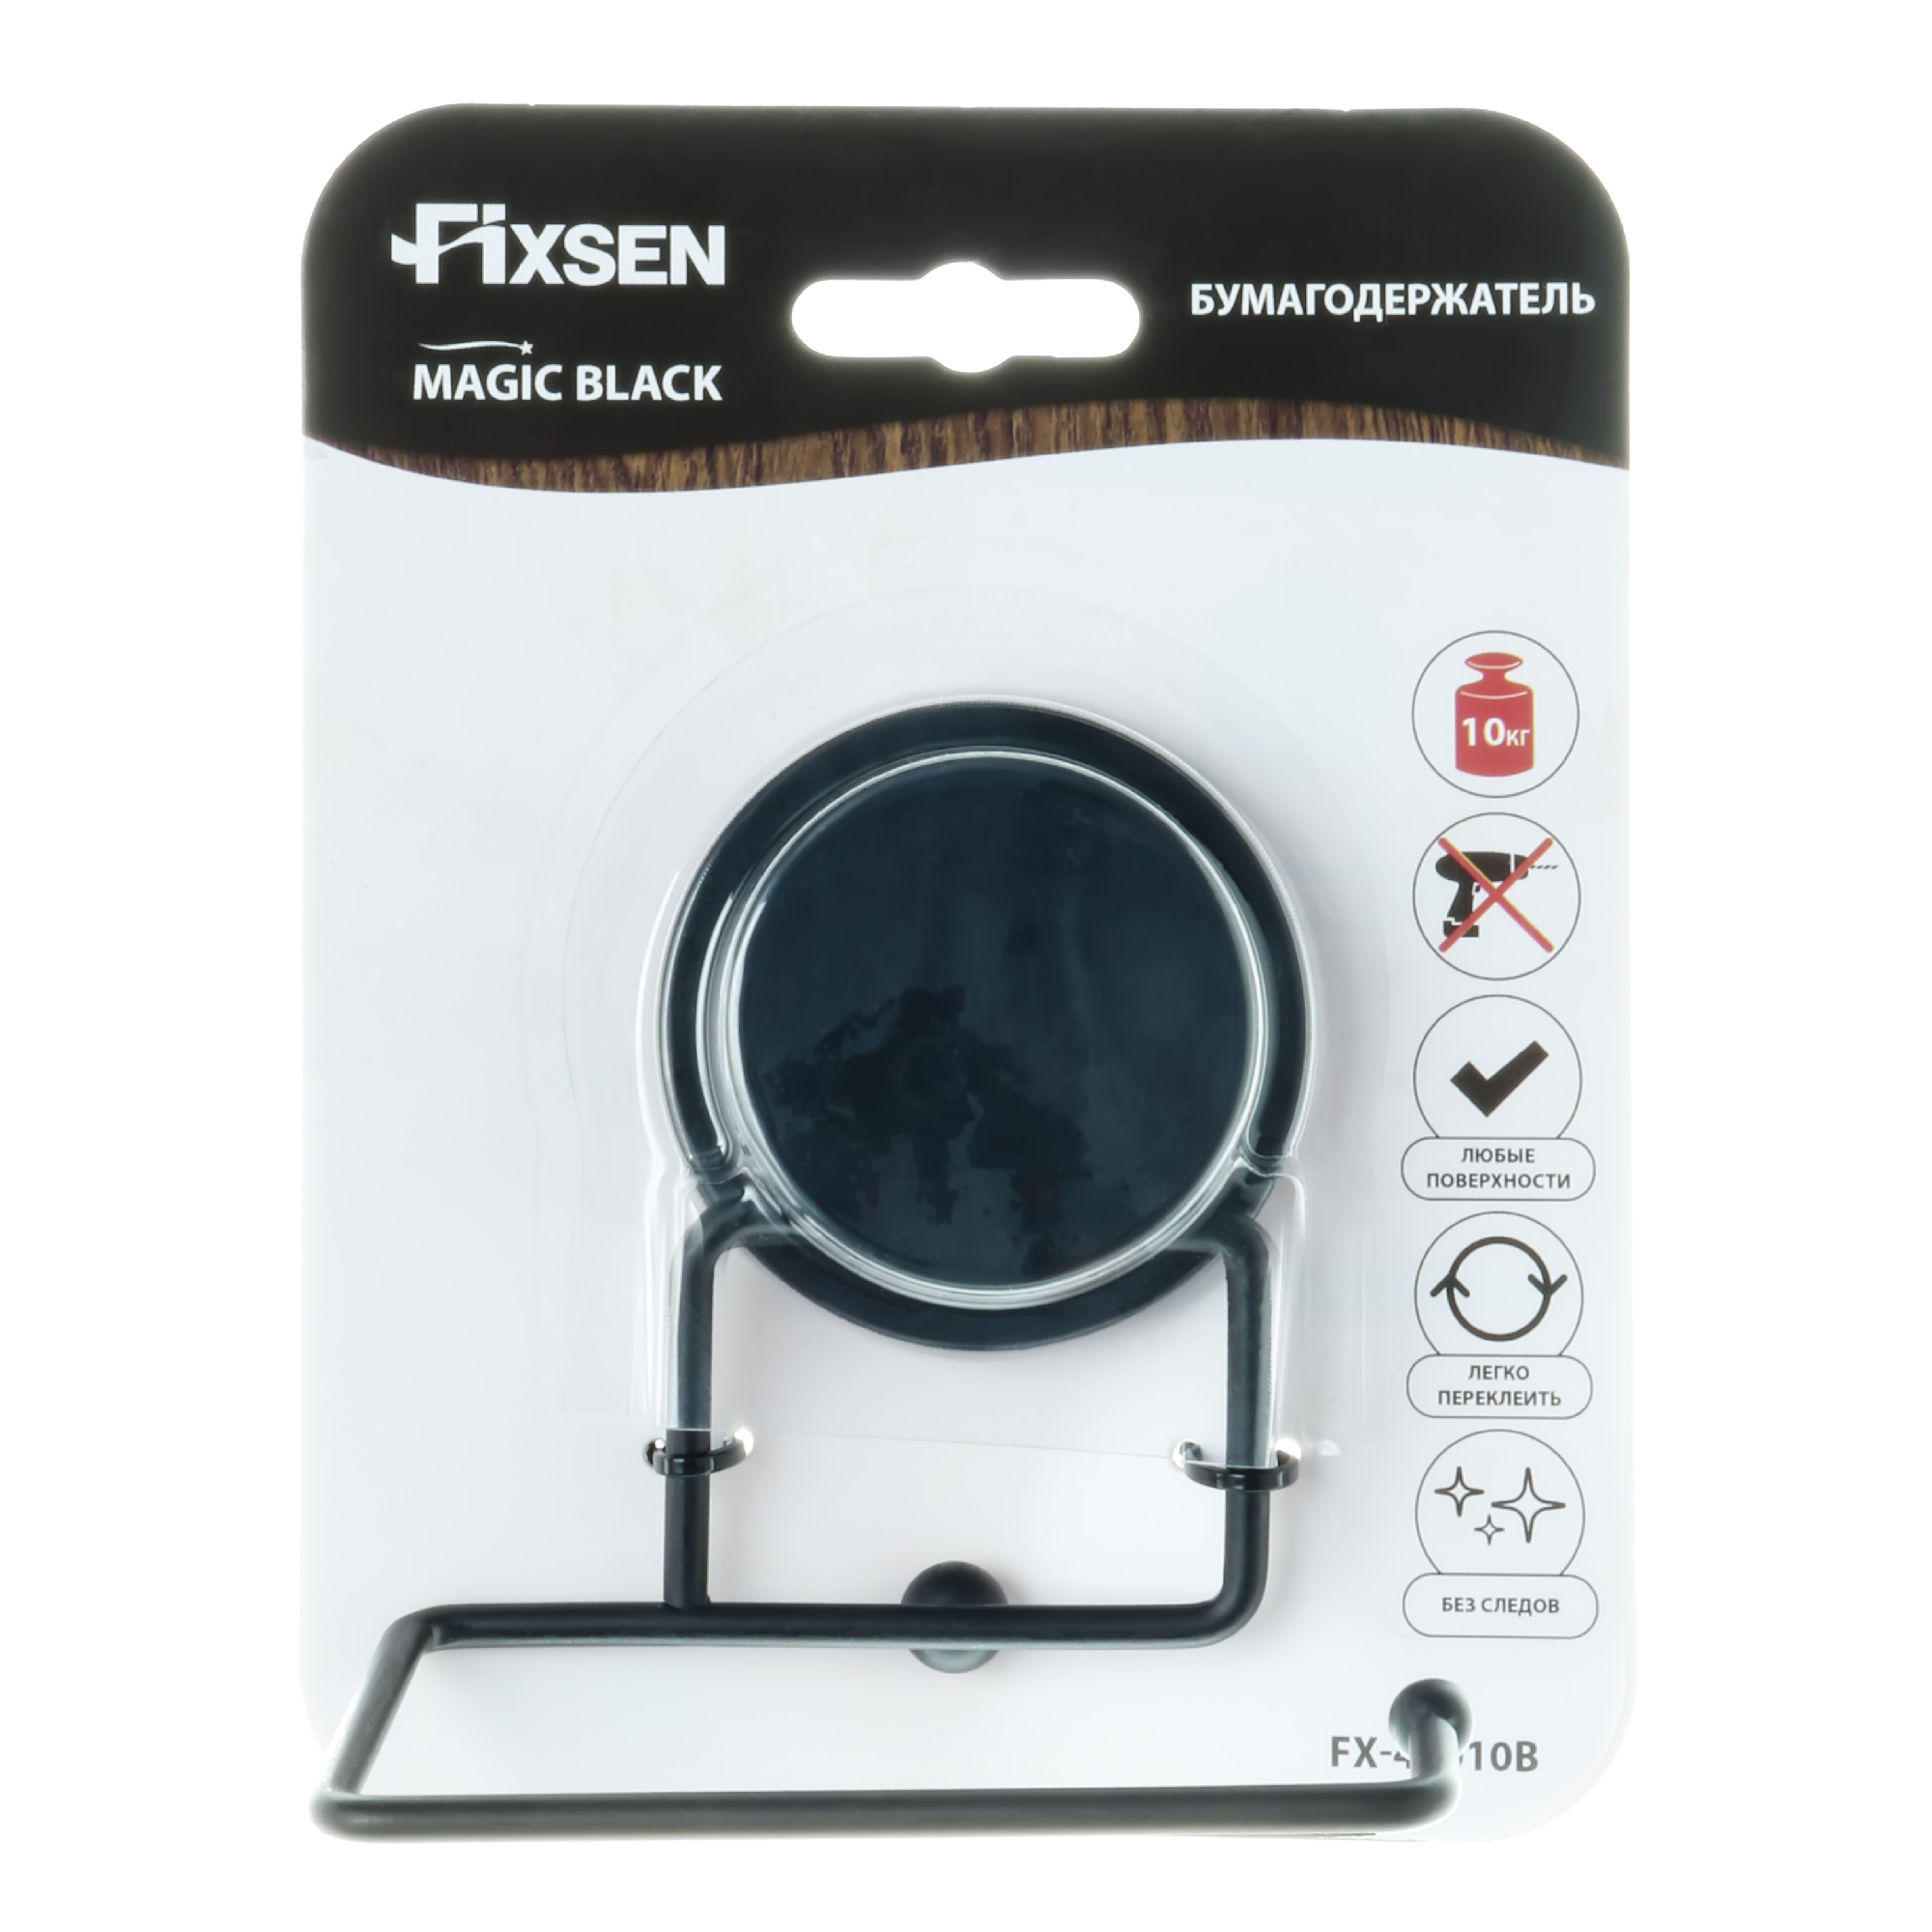 Бумагодержатель Fixsen без крышки MAGIC BLACK (FX-45010B) - фото 3